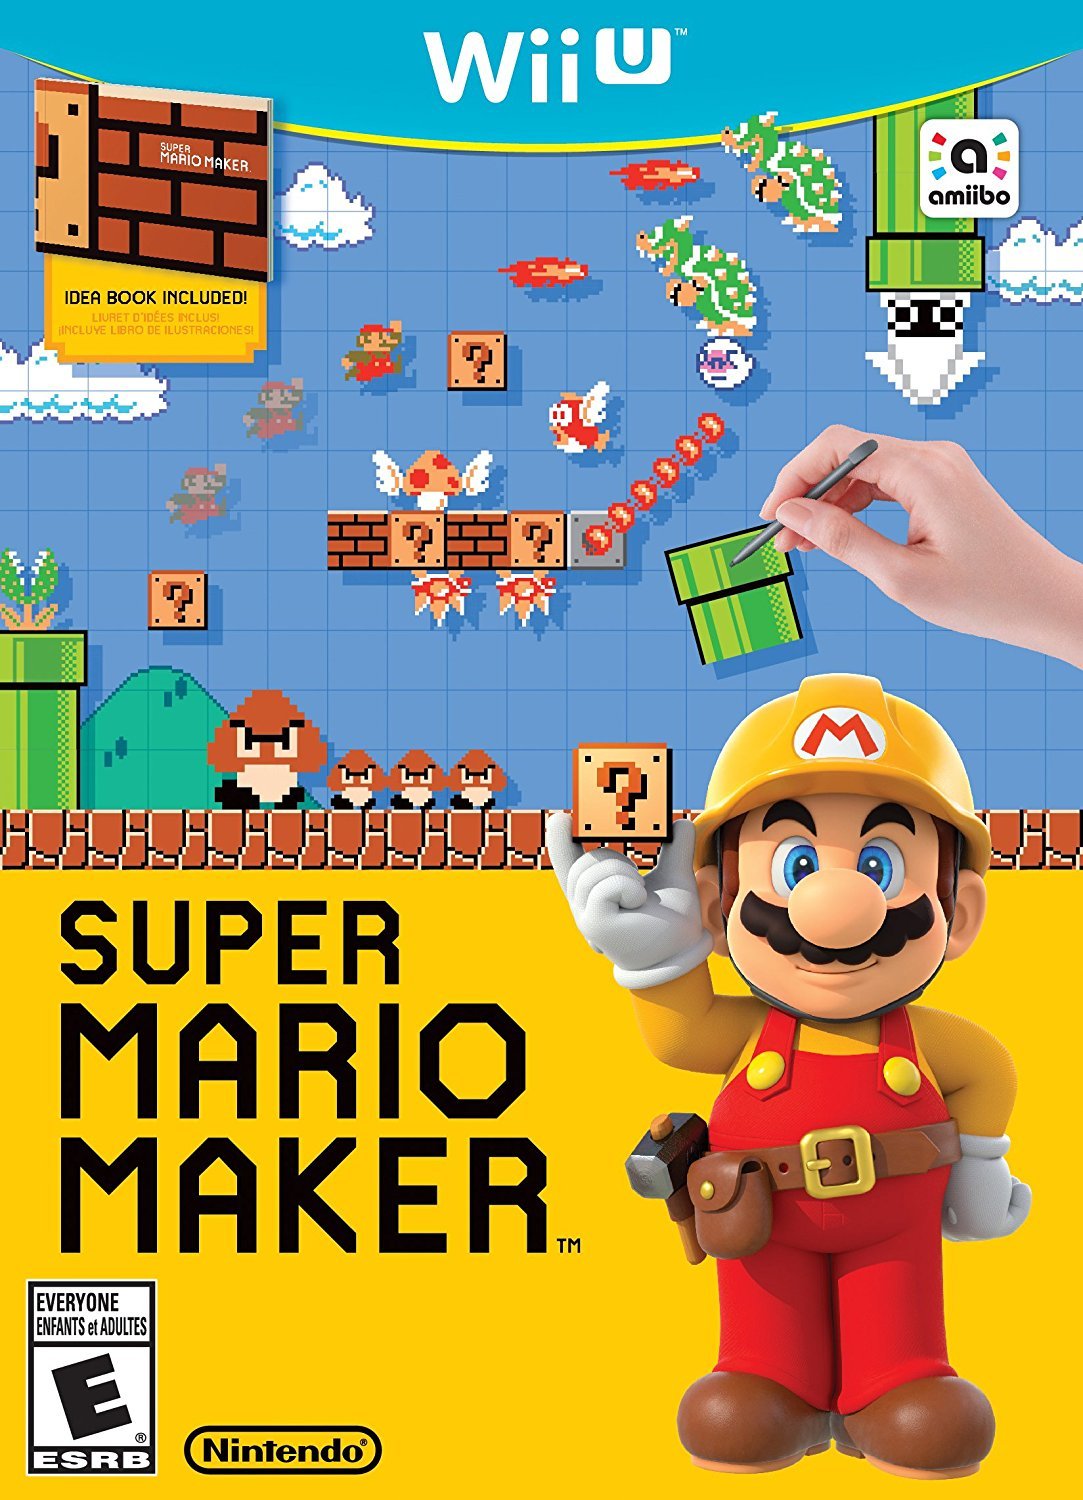 Atar borgoña pesadilla Super Mario Maker - Super Mario Wiki, the Mario encyclopedia